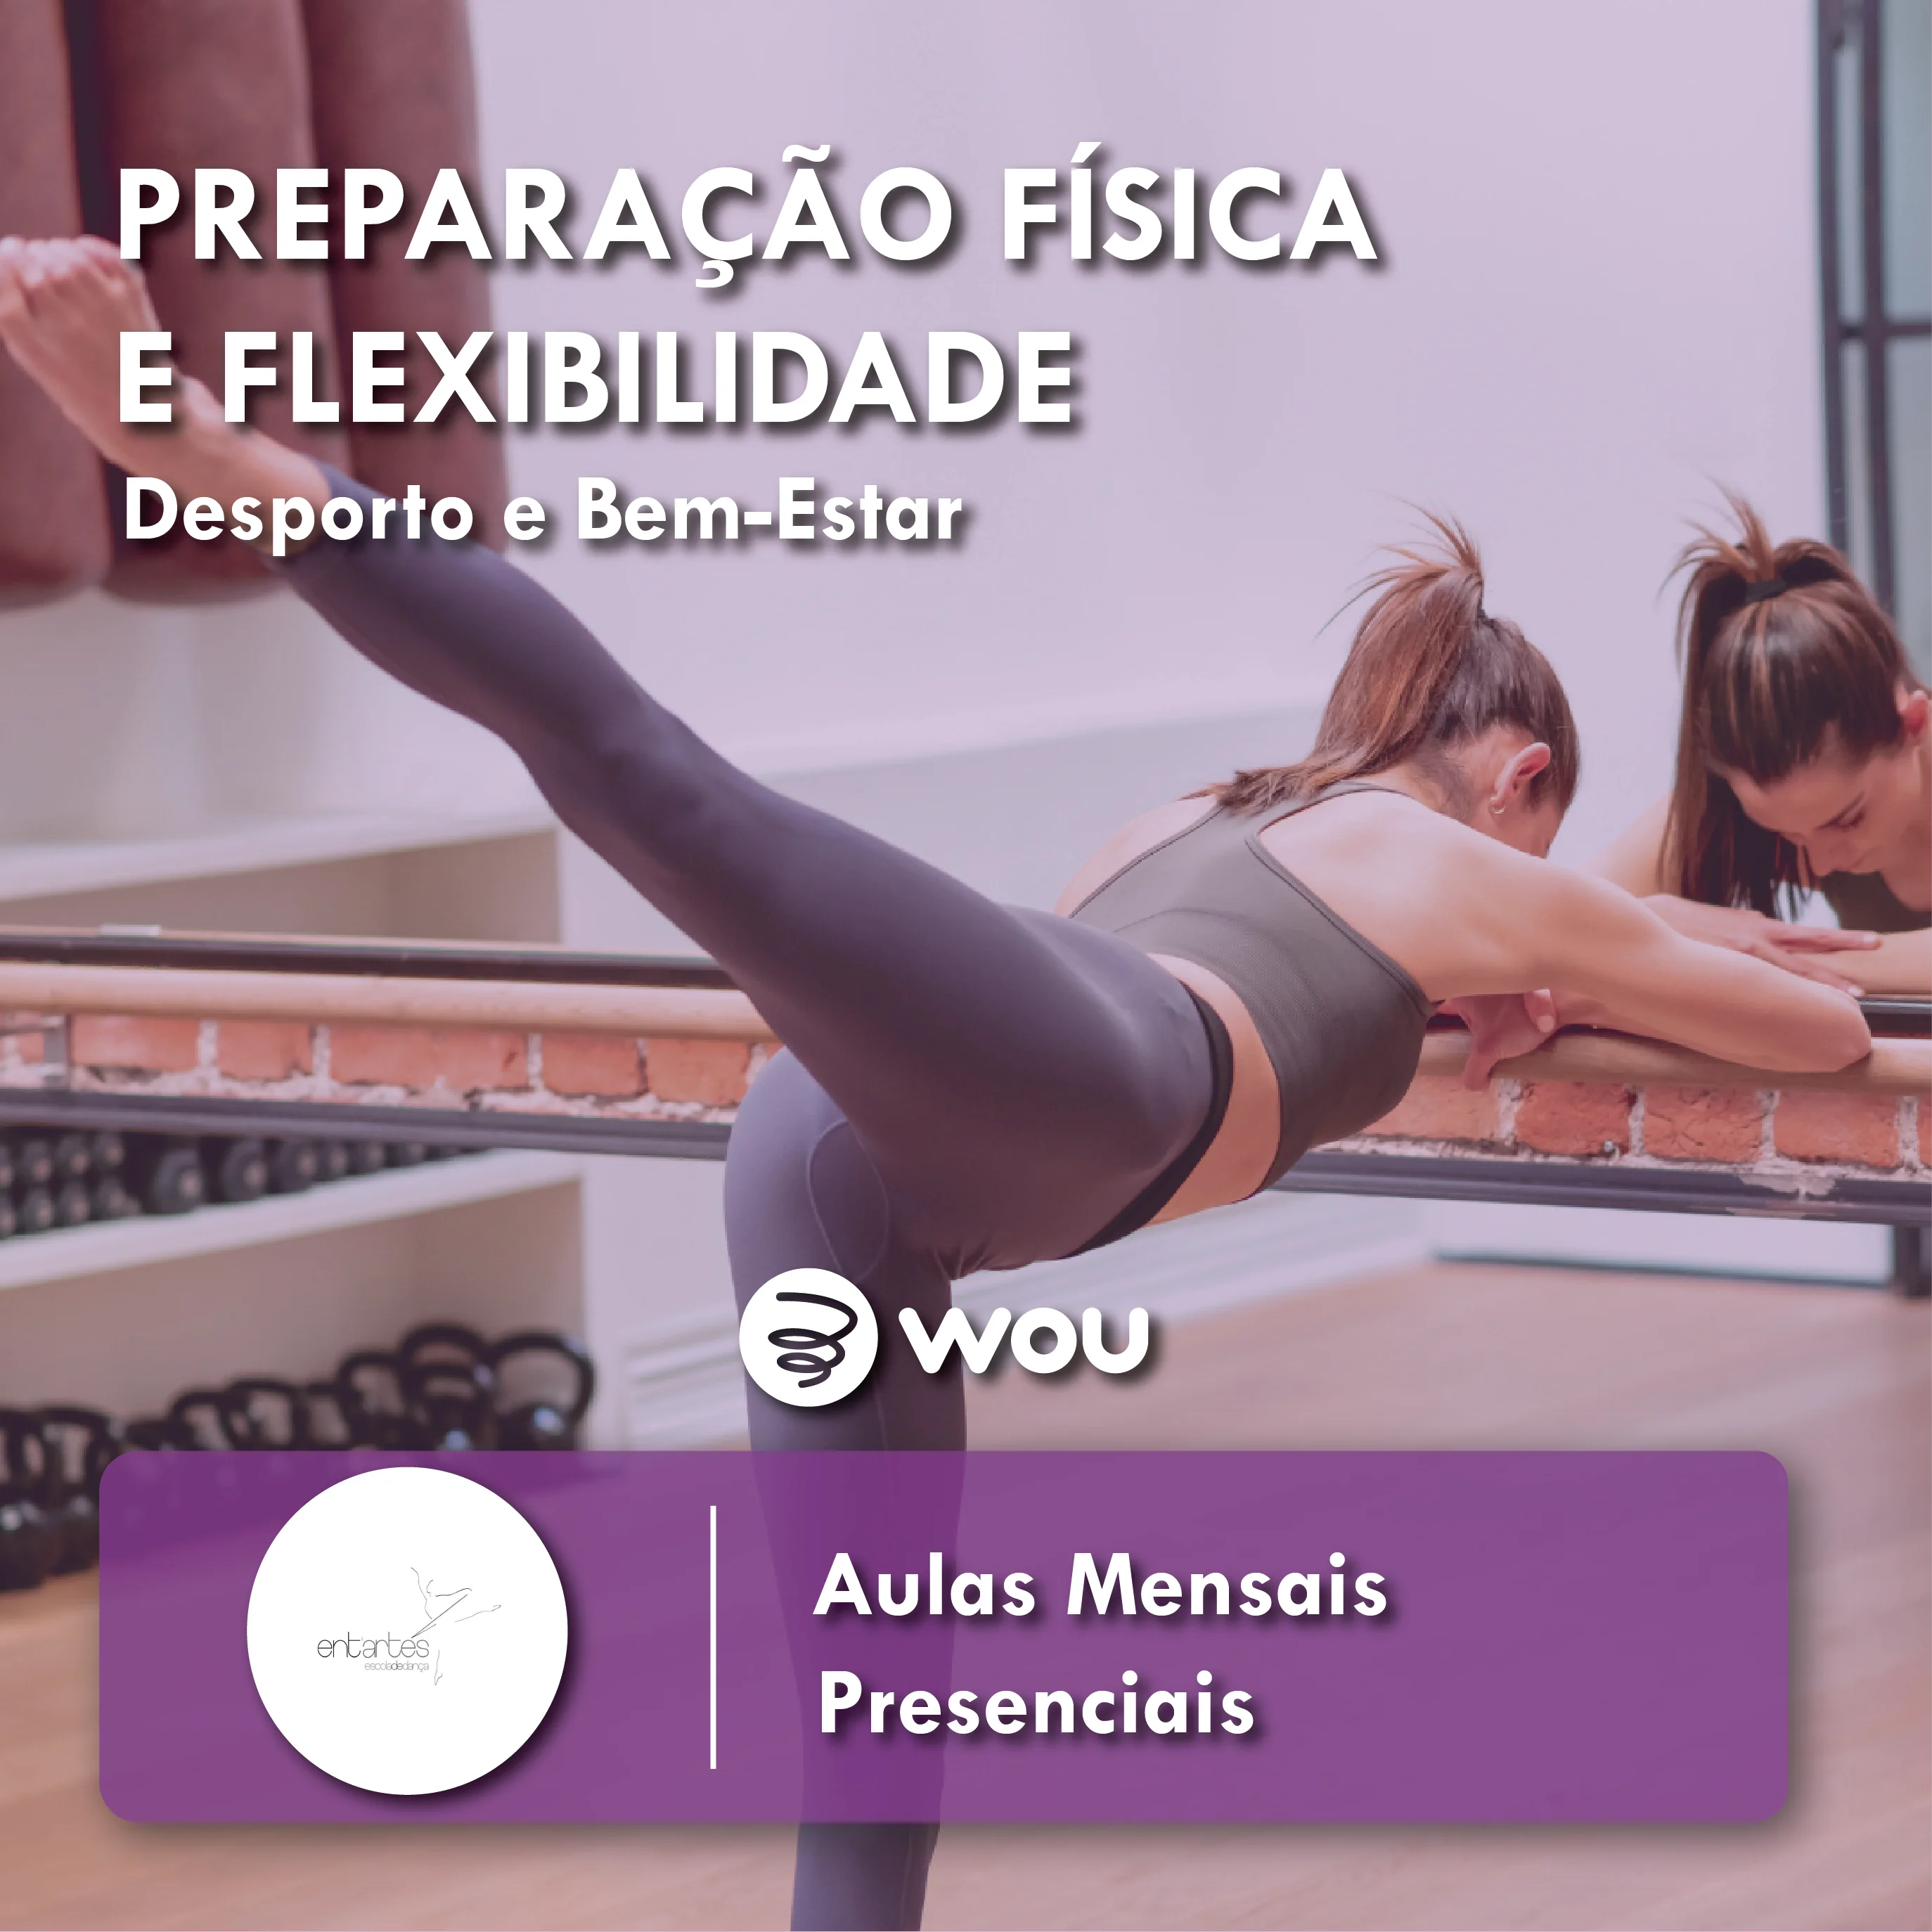 Aulas de Preparação Física e Flexibilidade em Braga